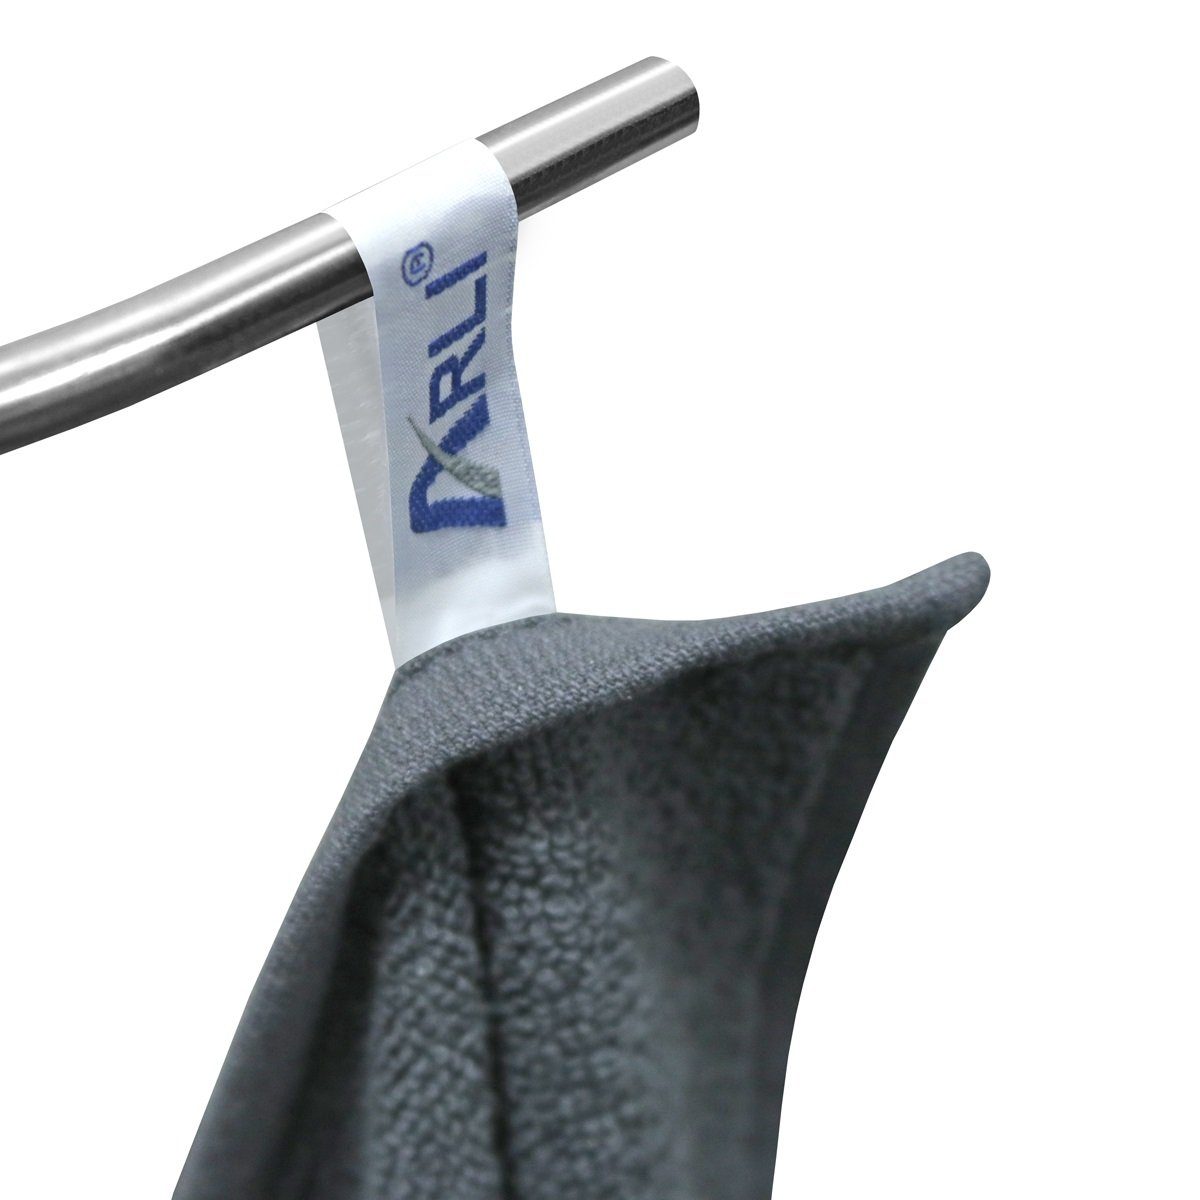 ARLI Handtuch 8 anthrazit Baumwolle Rohstoff + schwarz Design Frottier Set modern schlicht praktisch x 8 100% Serie aus 4 elegant (8-tlg) Set Handtücher mit Stück, hochwertigem Handtuchaufhänger klassischer 4 Handtuch